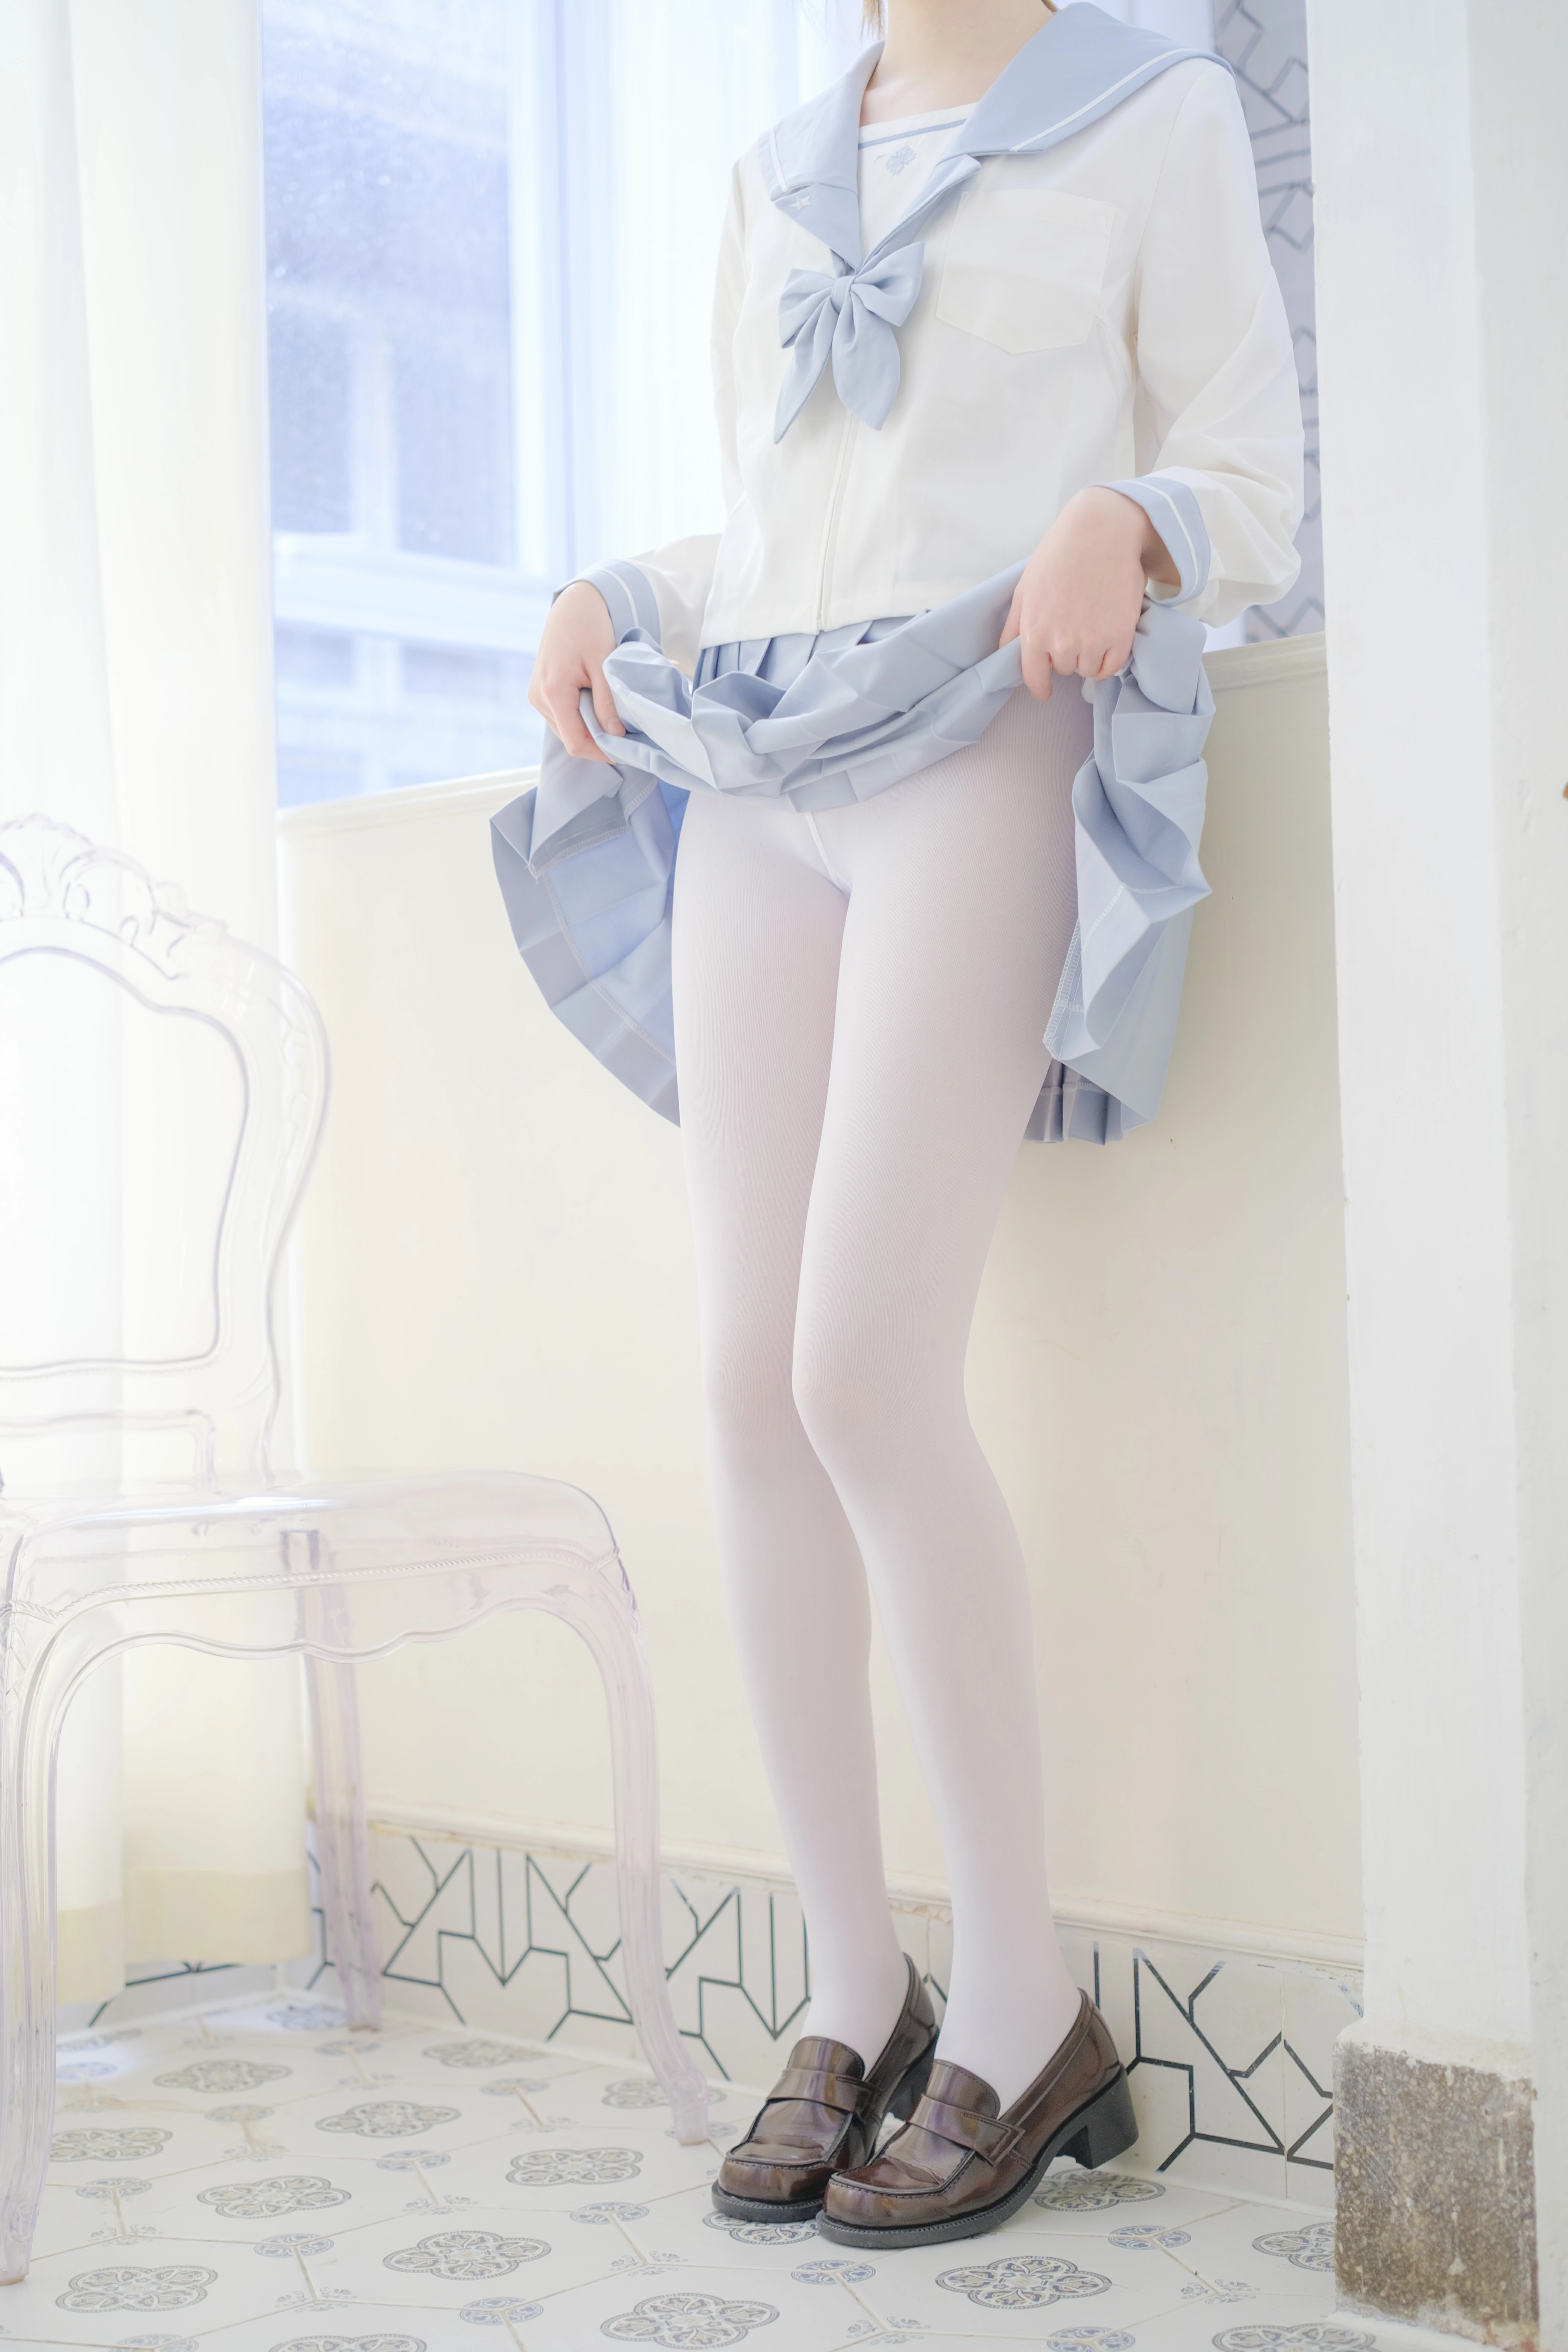 [森萝财团]内部VIP系列 微风-04 少女萝莉小学妹 白色JK制服与蓝色短裙加白色丝袜美腿私房写真集,0021